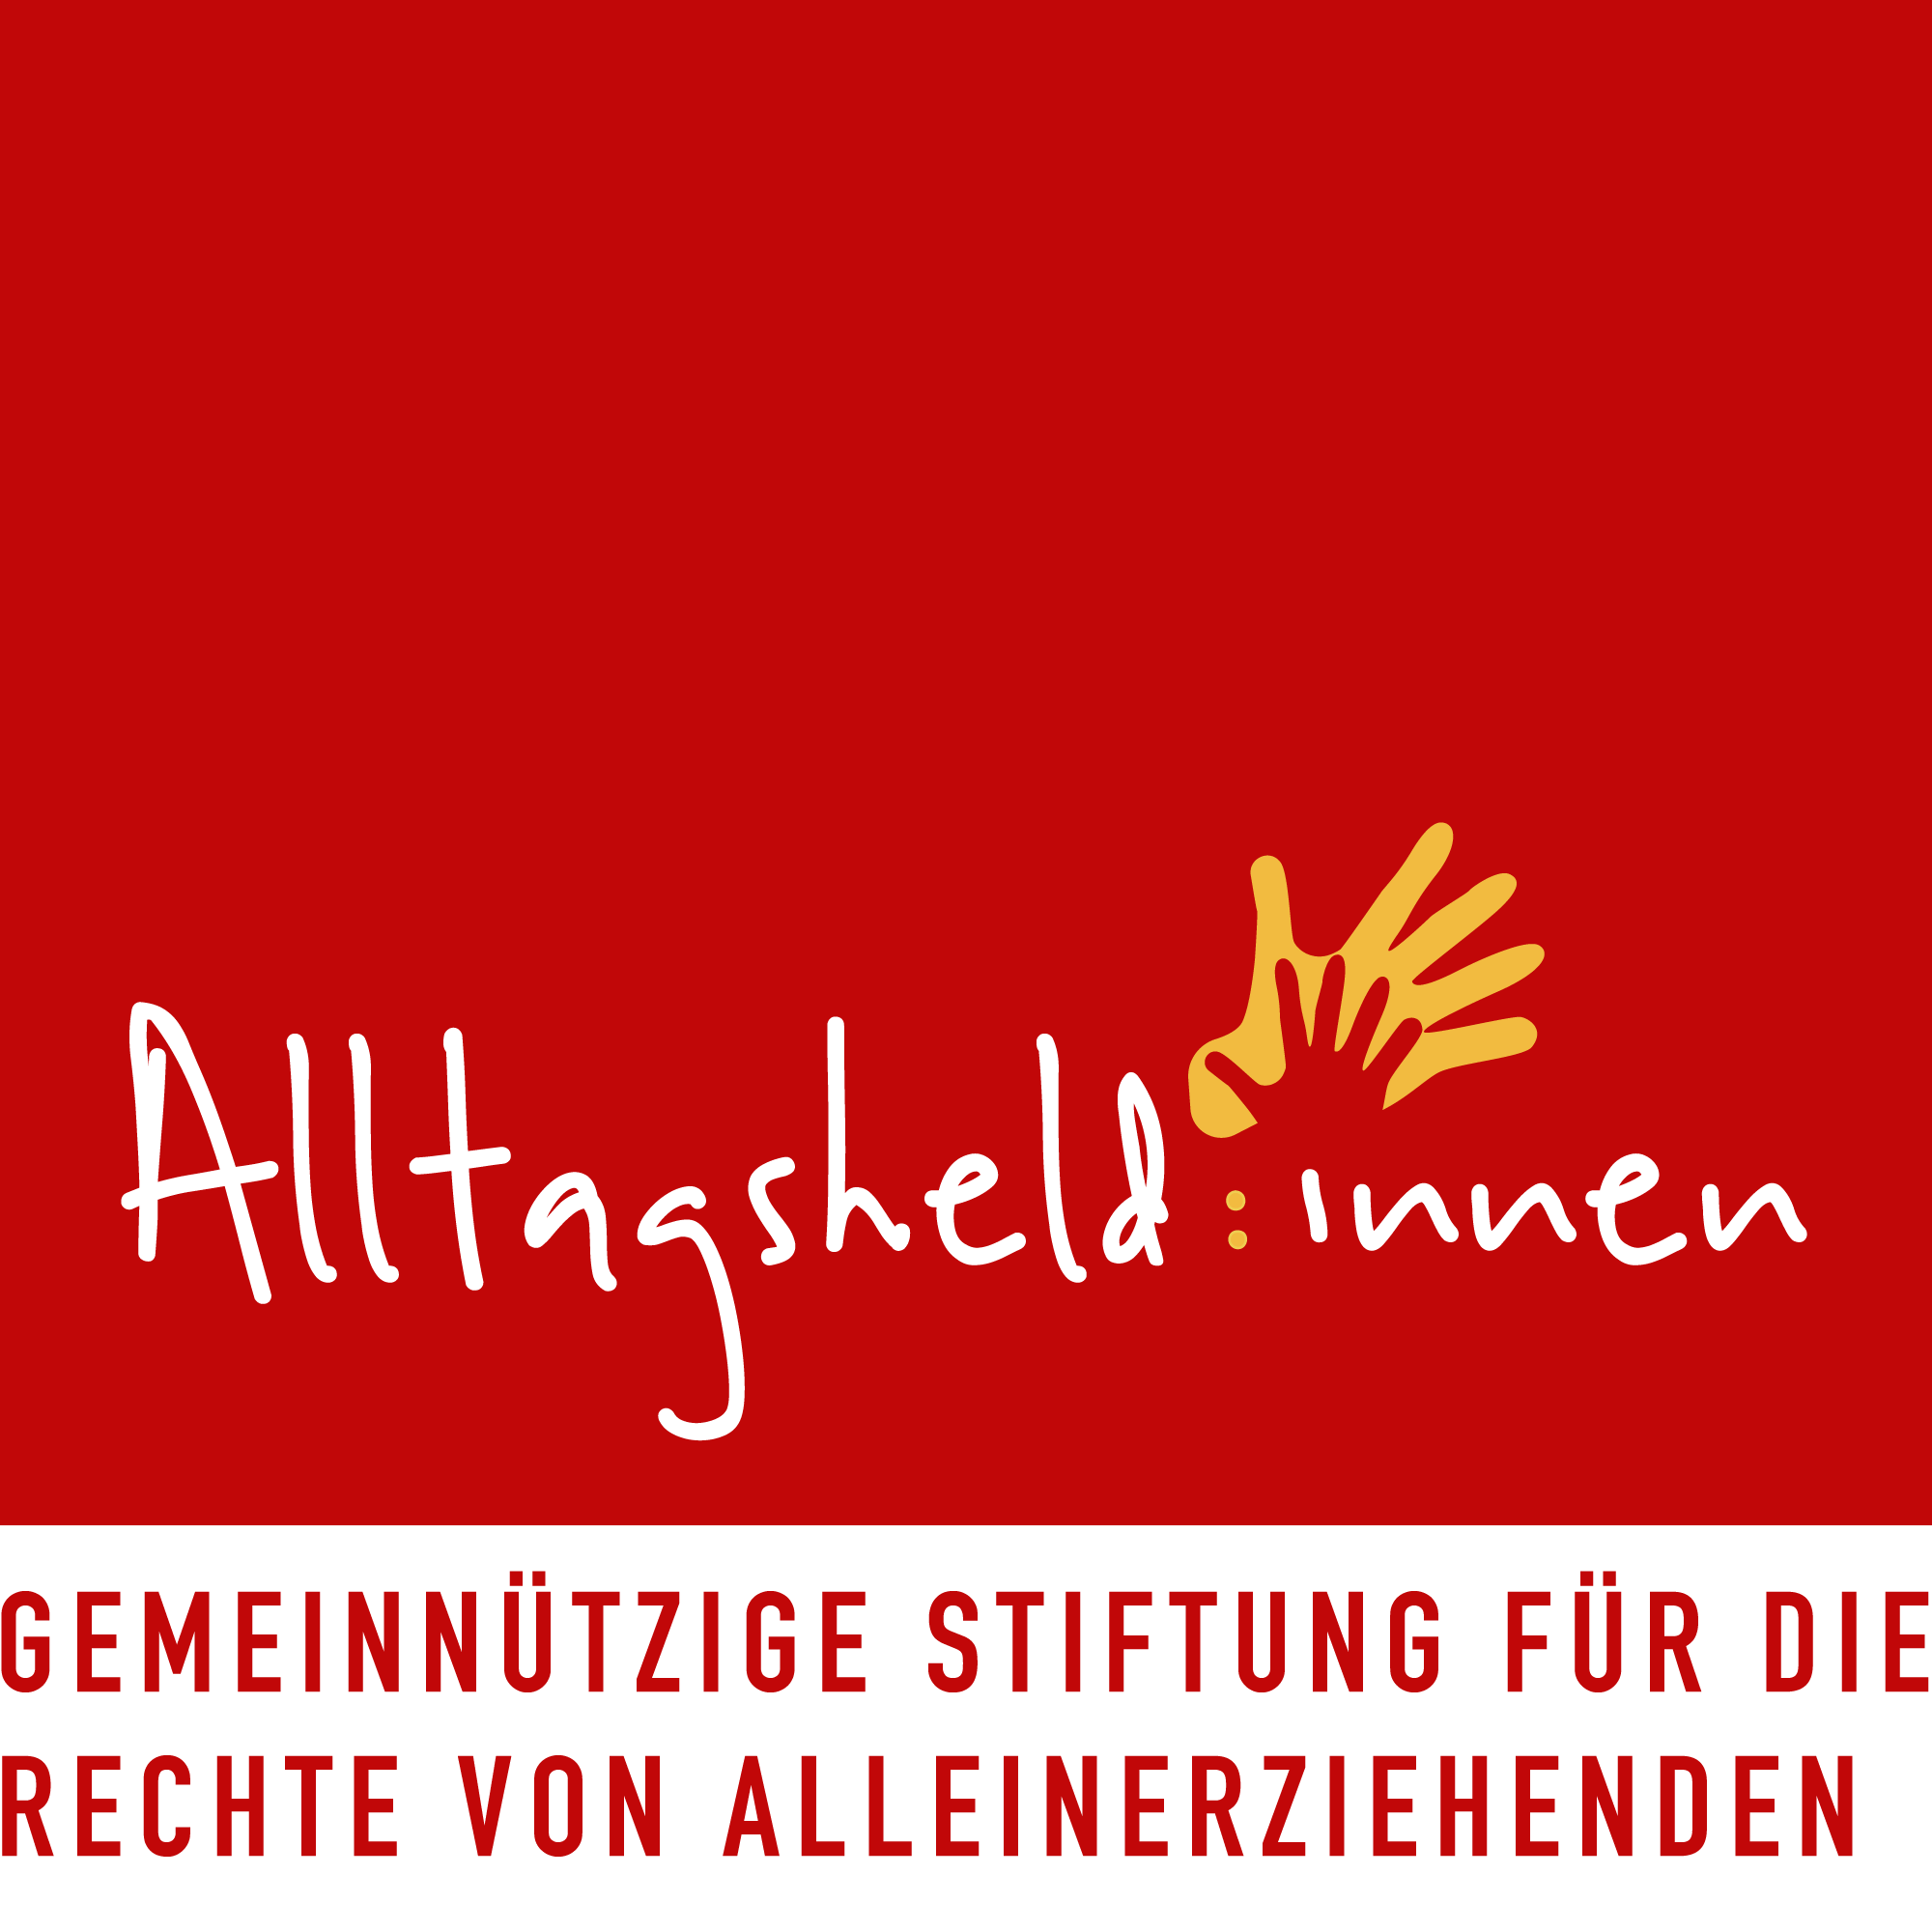 Stiftung Alltagsheld:innen Logo mit Claim